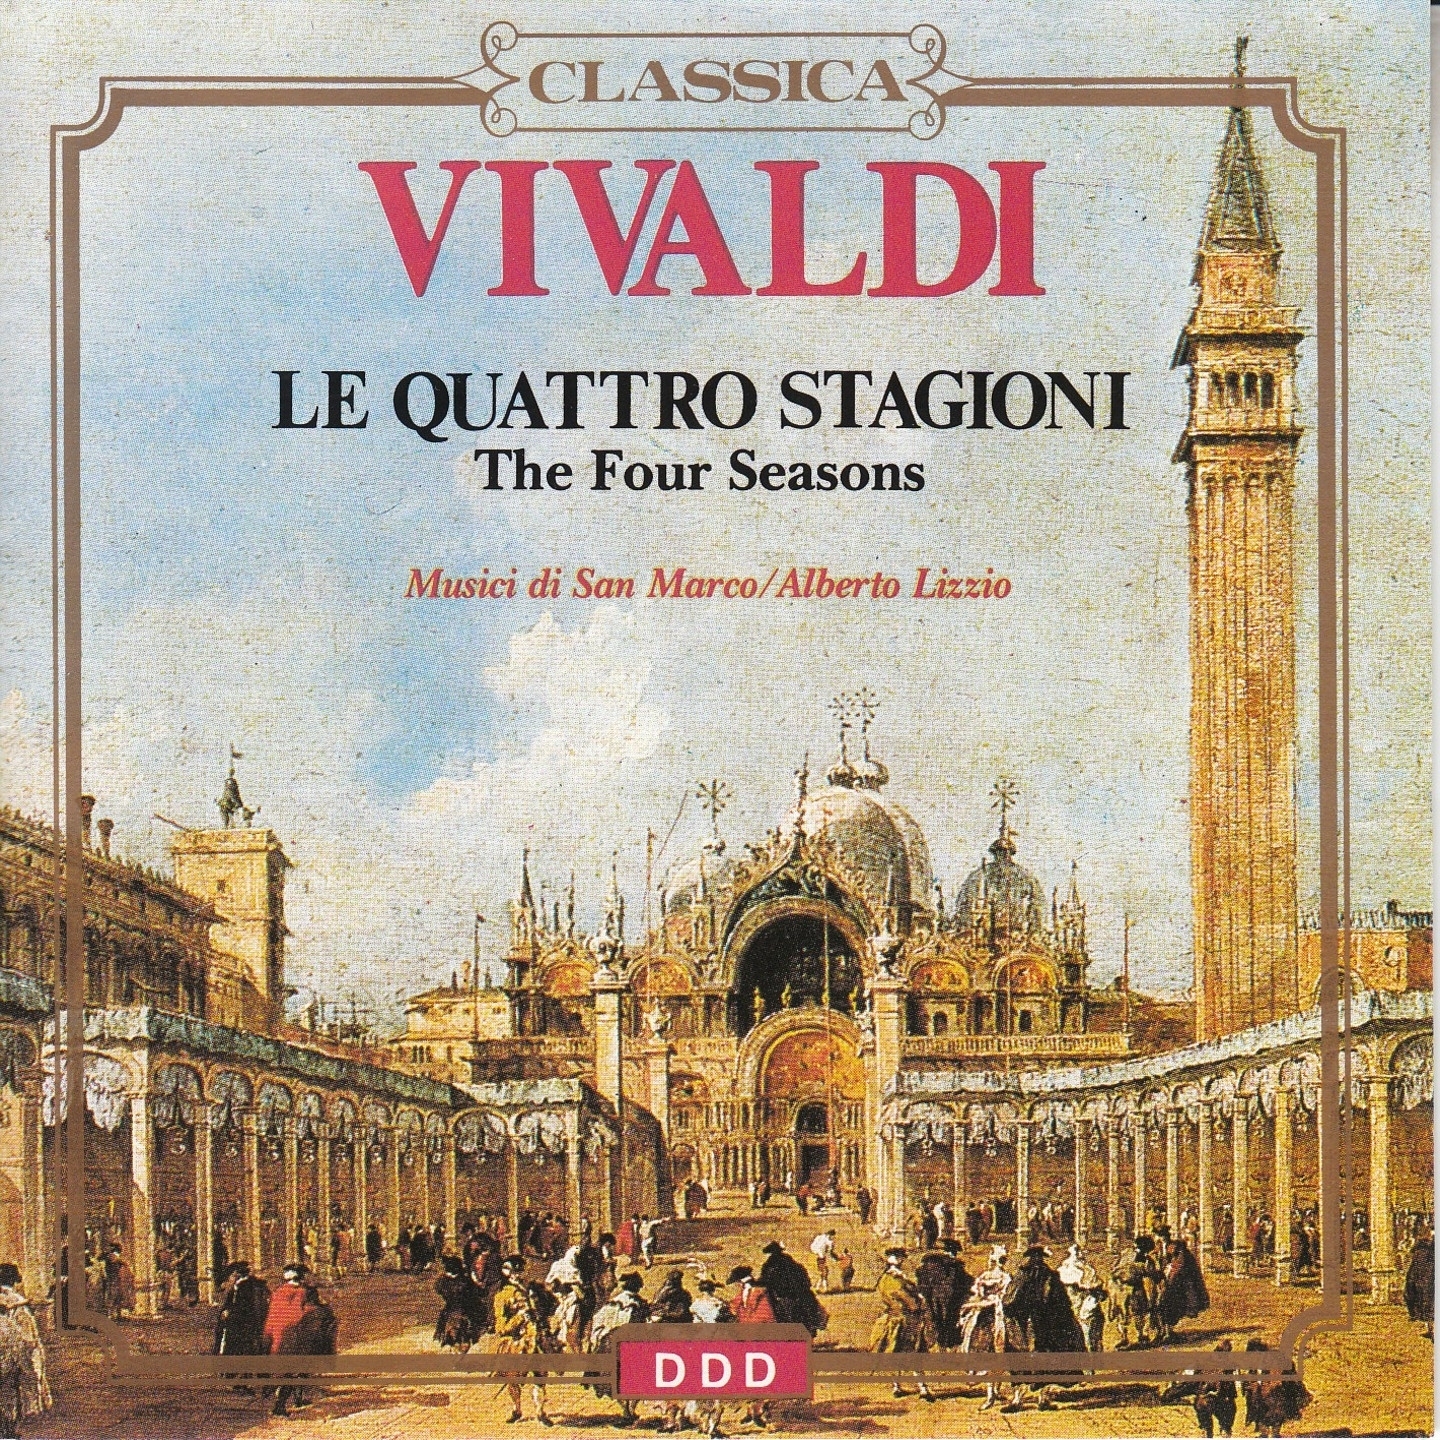 Concerto for 4 Violins and Cello in B Minor, Op. 3, RV 580: I. Allegro